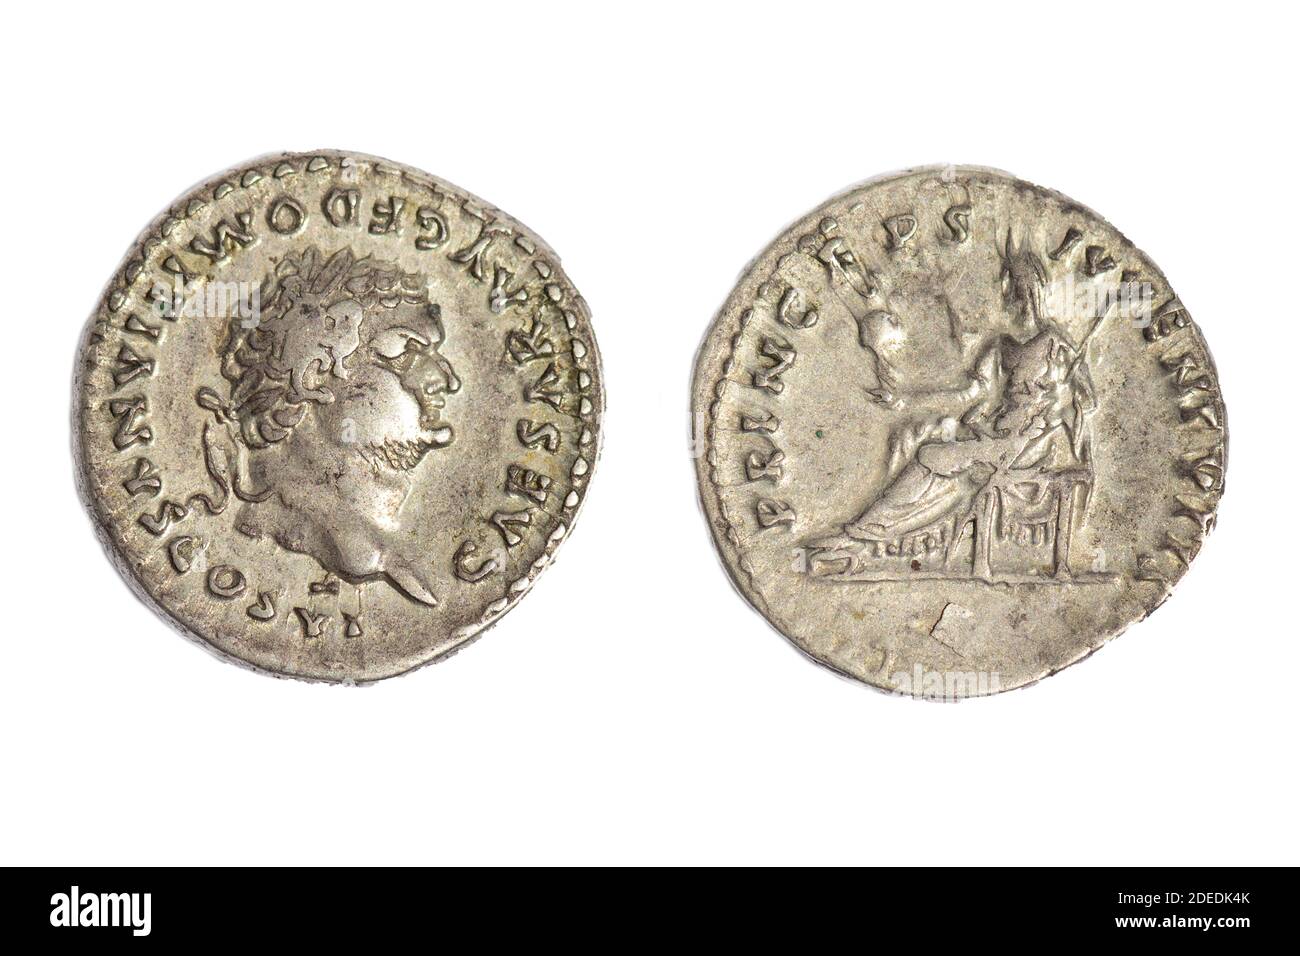 Alte antike Jahrgangsmünzen AR Silber Denarius Kaiser Domitian Caesar (Rückseite) Göttin von Vesta auf einem Thron. Münzdatum 79 n. Chr. Stockfoto